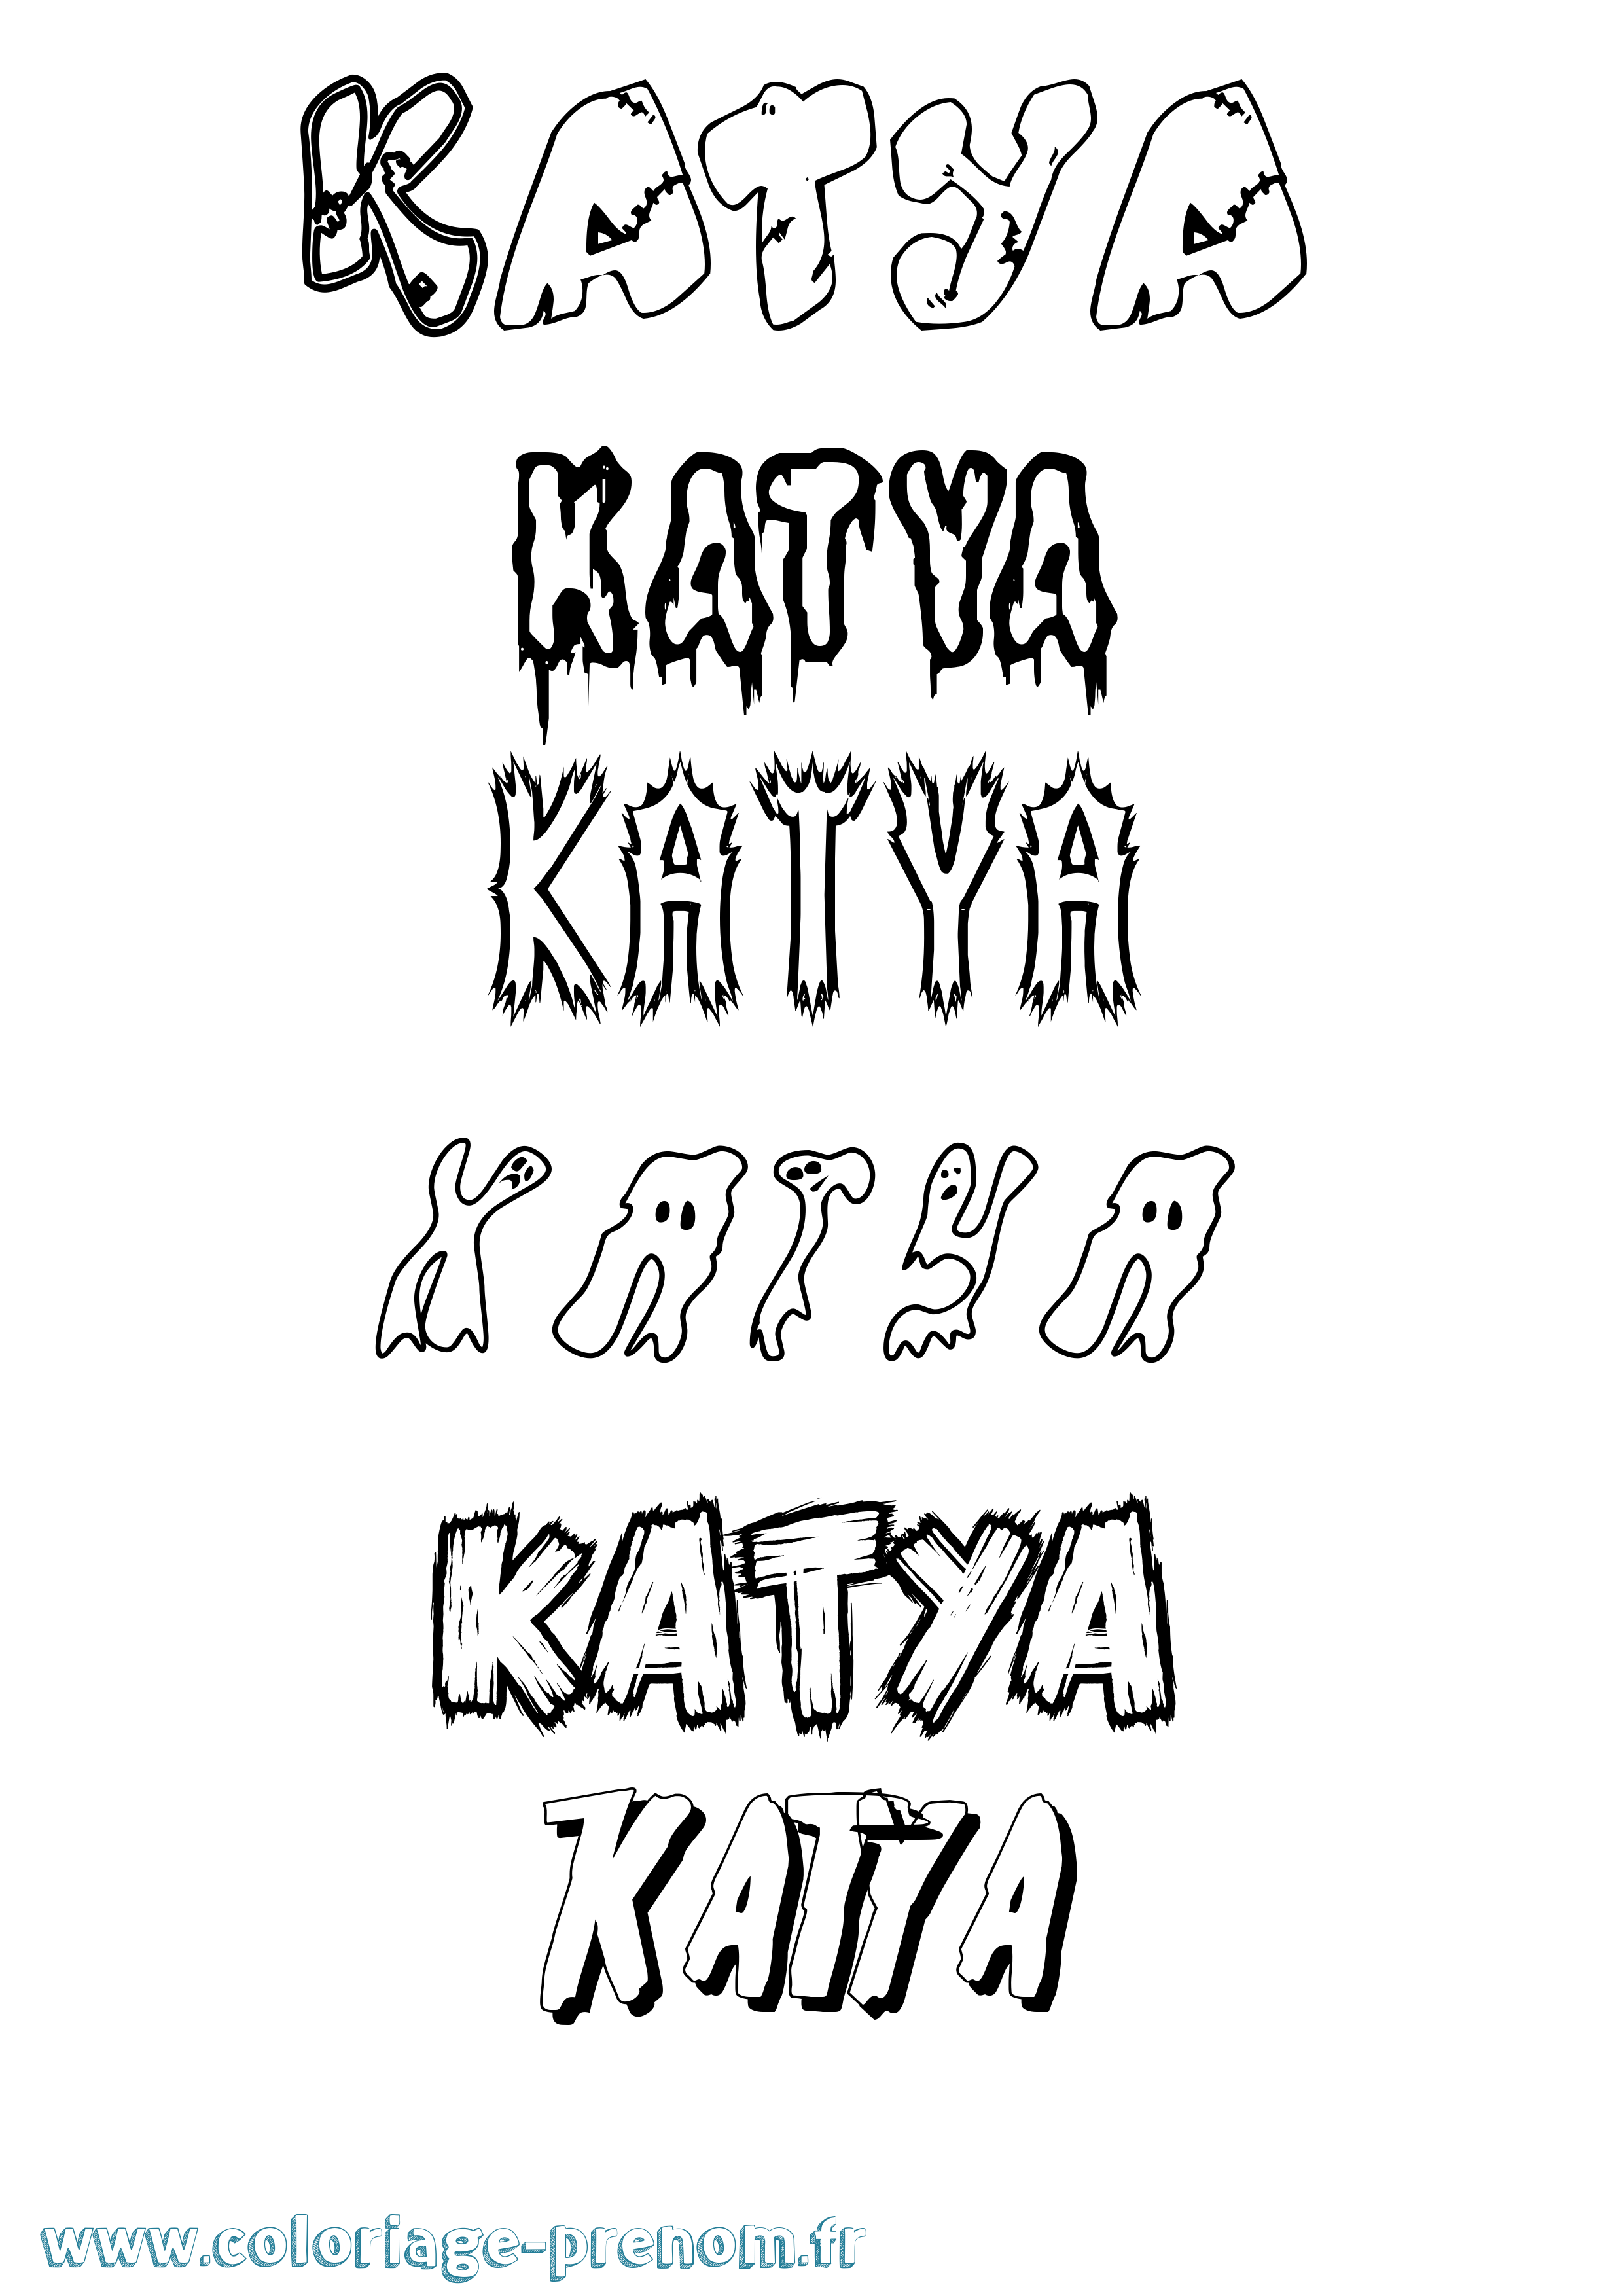 Coloriage prénom Katya Frisson